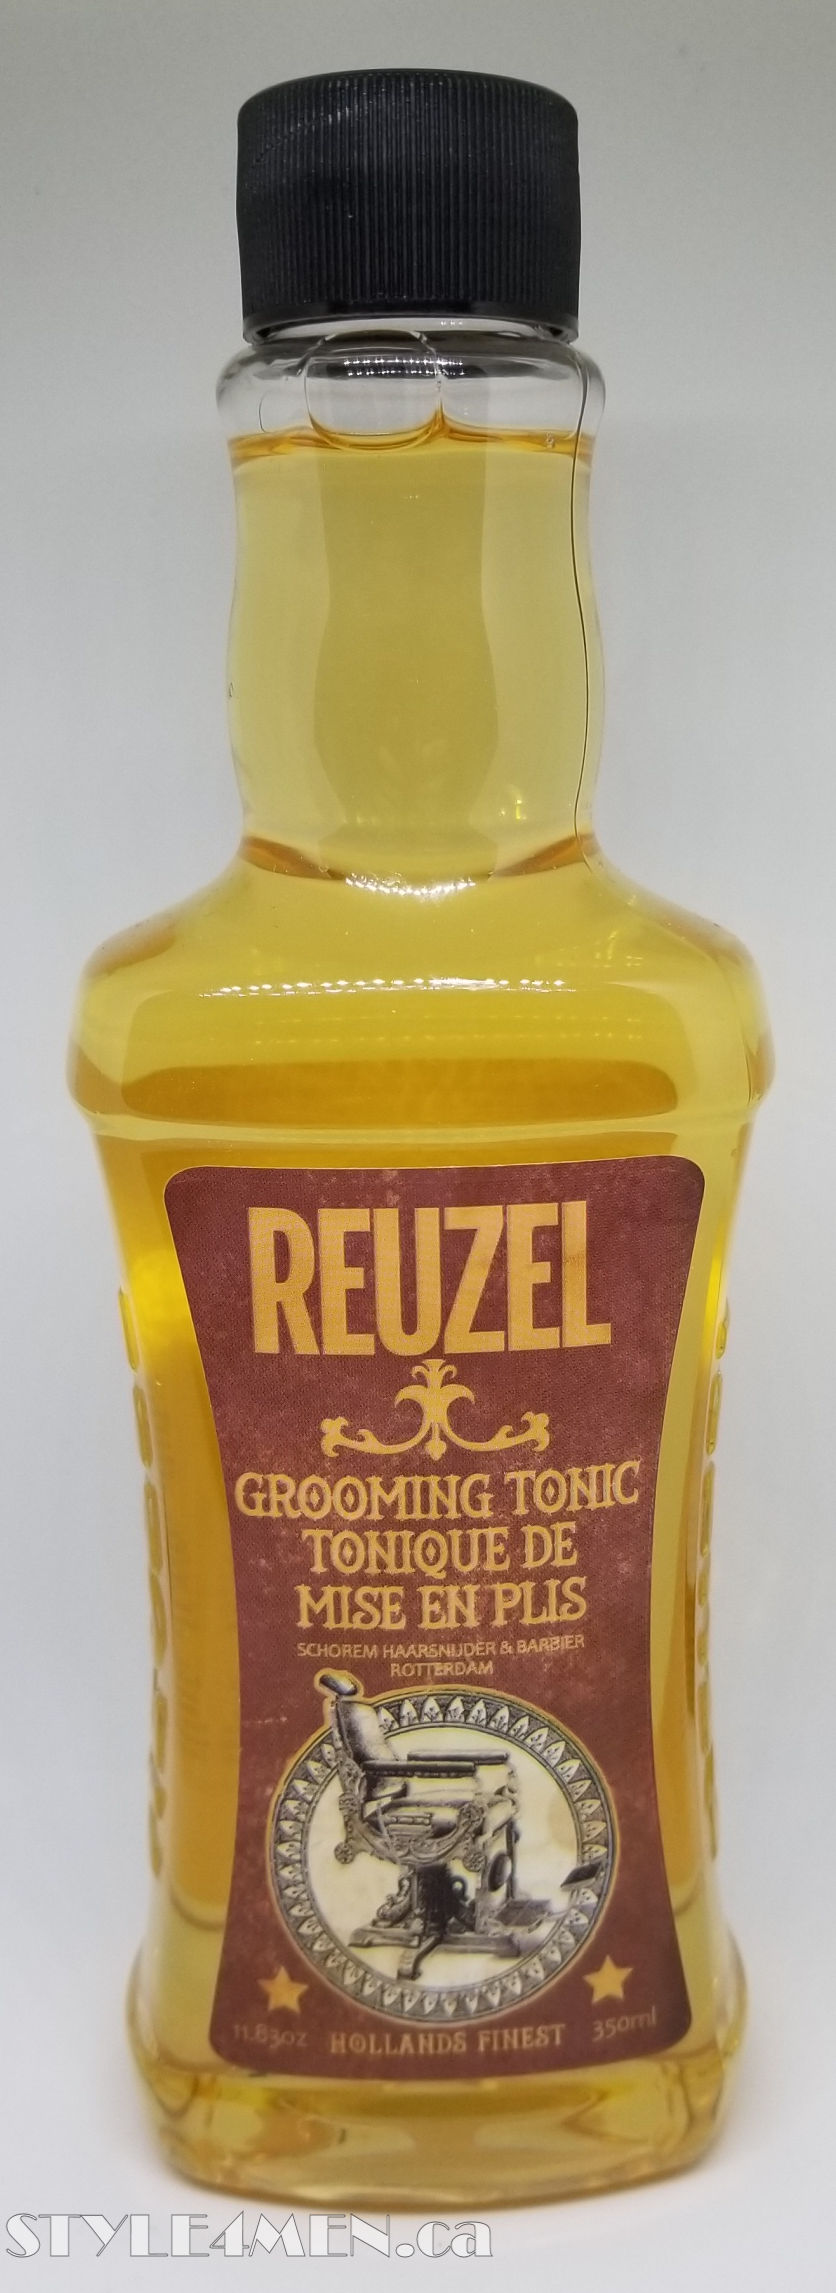 REUZEL Grooming Tonic – A Slightly Sticky Preparation Tonic